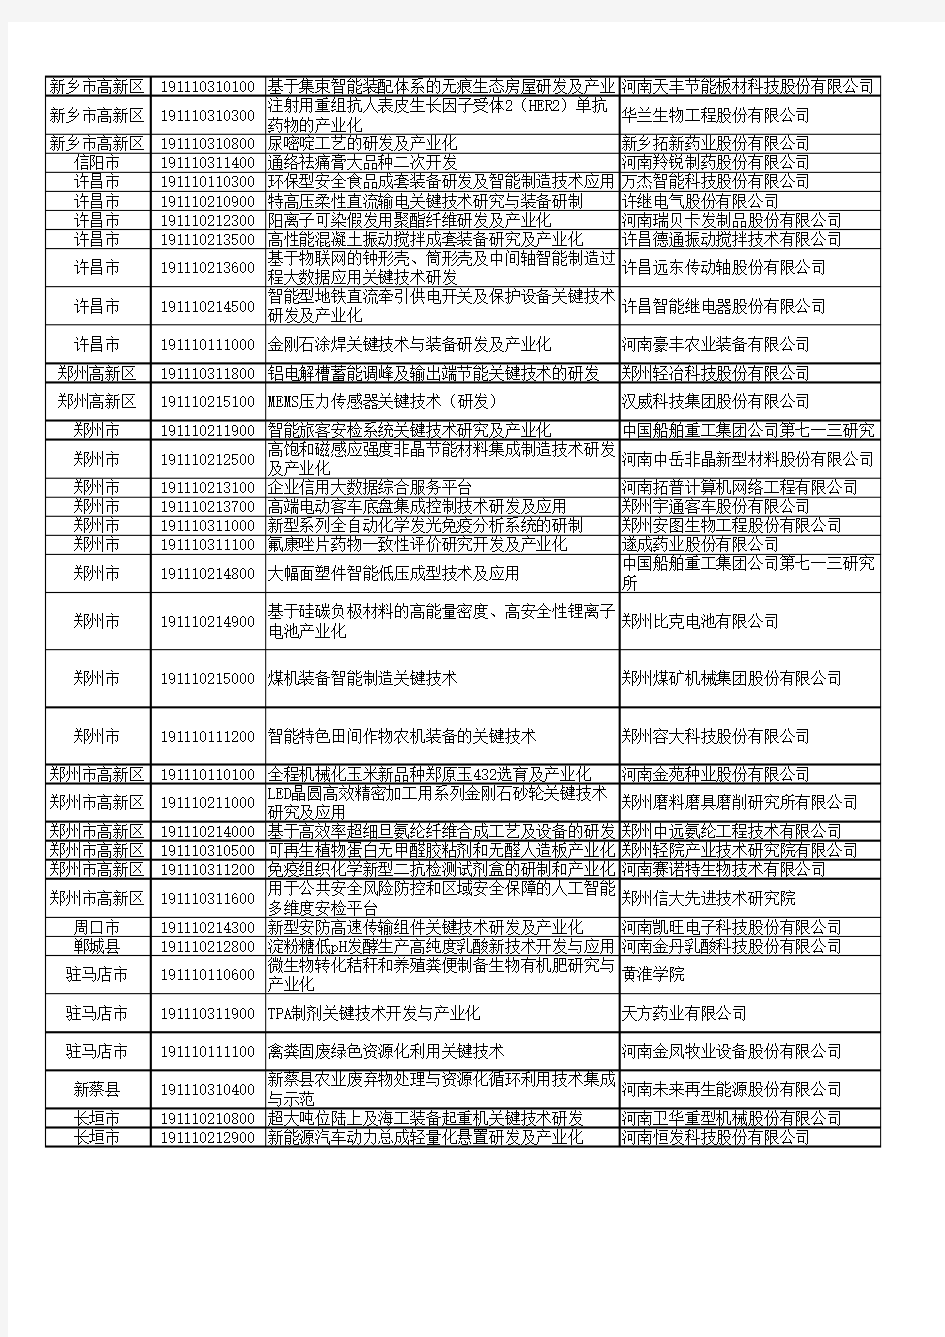 2019年度河南省创新示范专项和重大关键技术需求揭榜攻关项目清单